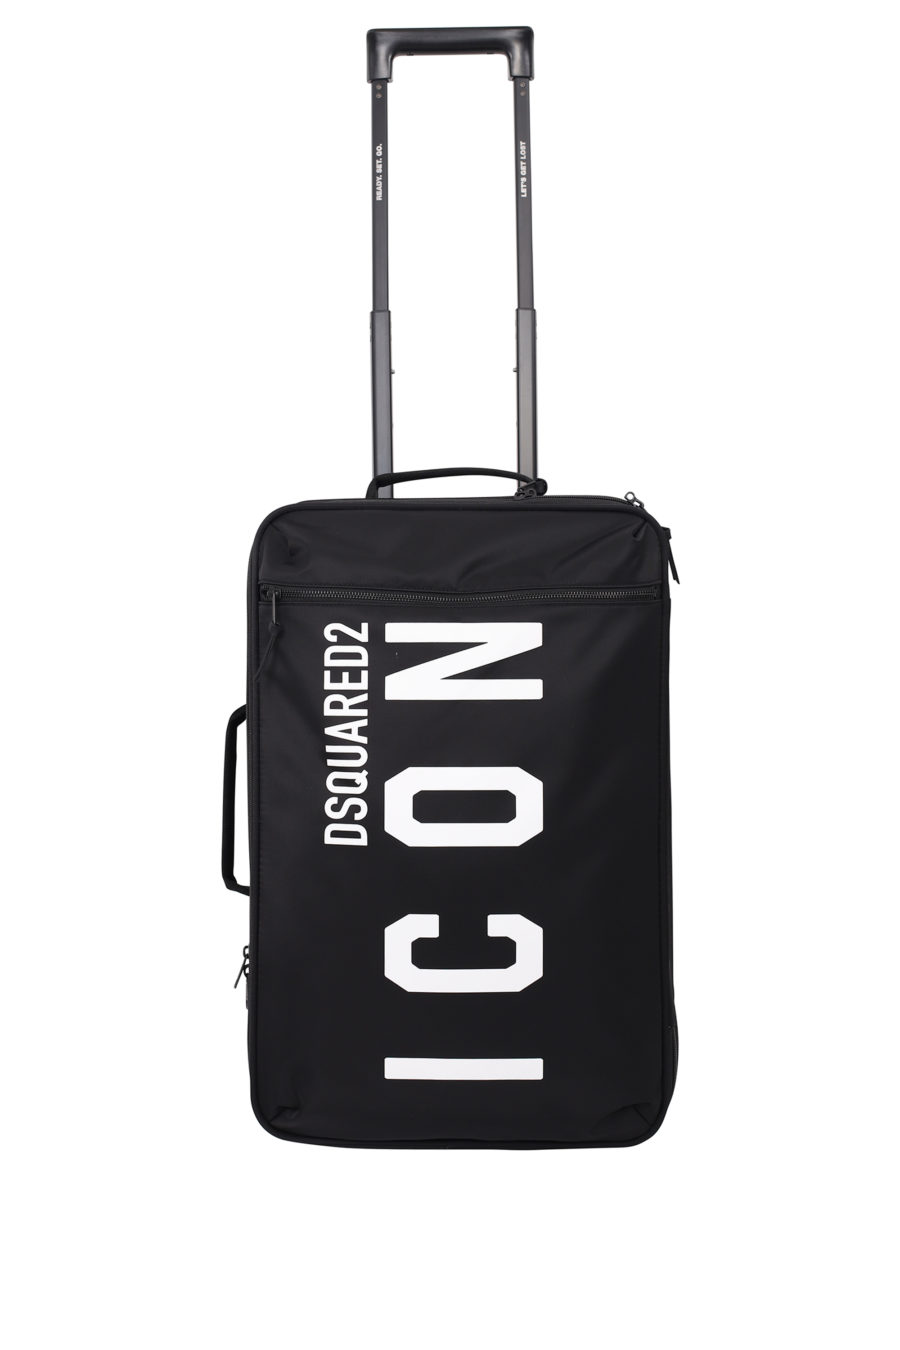 Valise à roulettes noire avec logo "icon" - IMG 9699